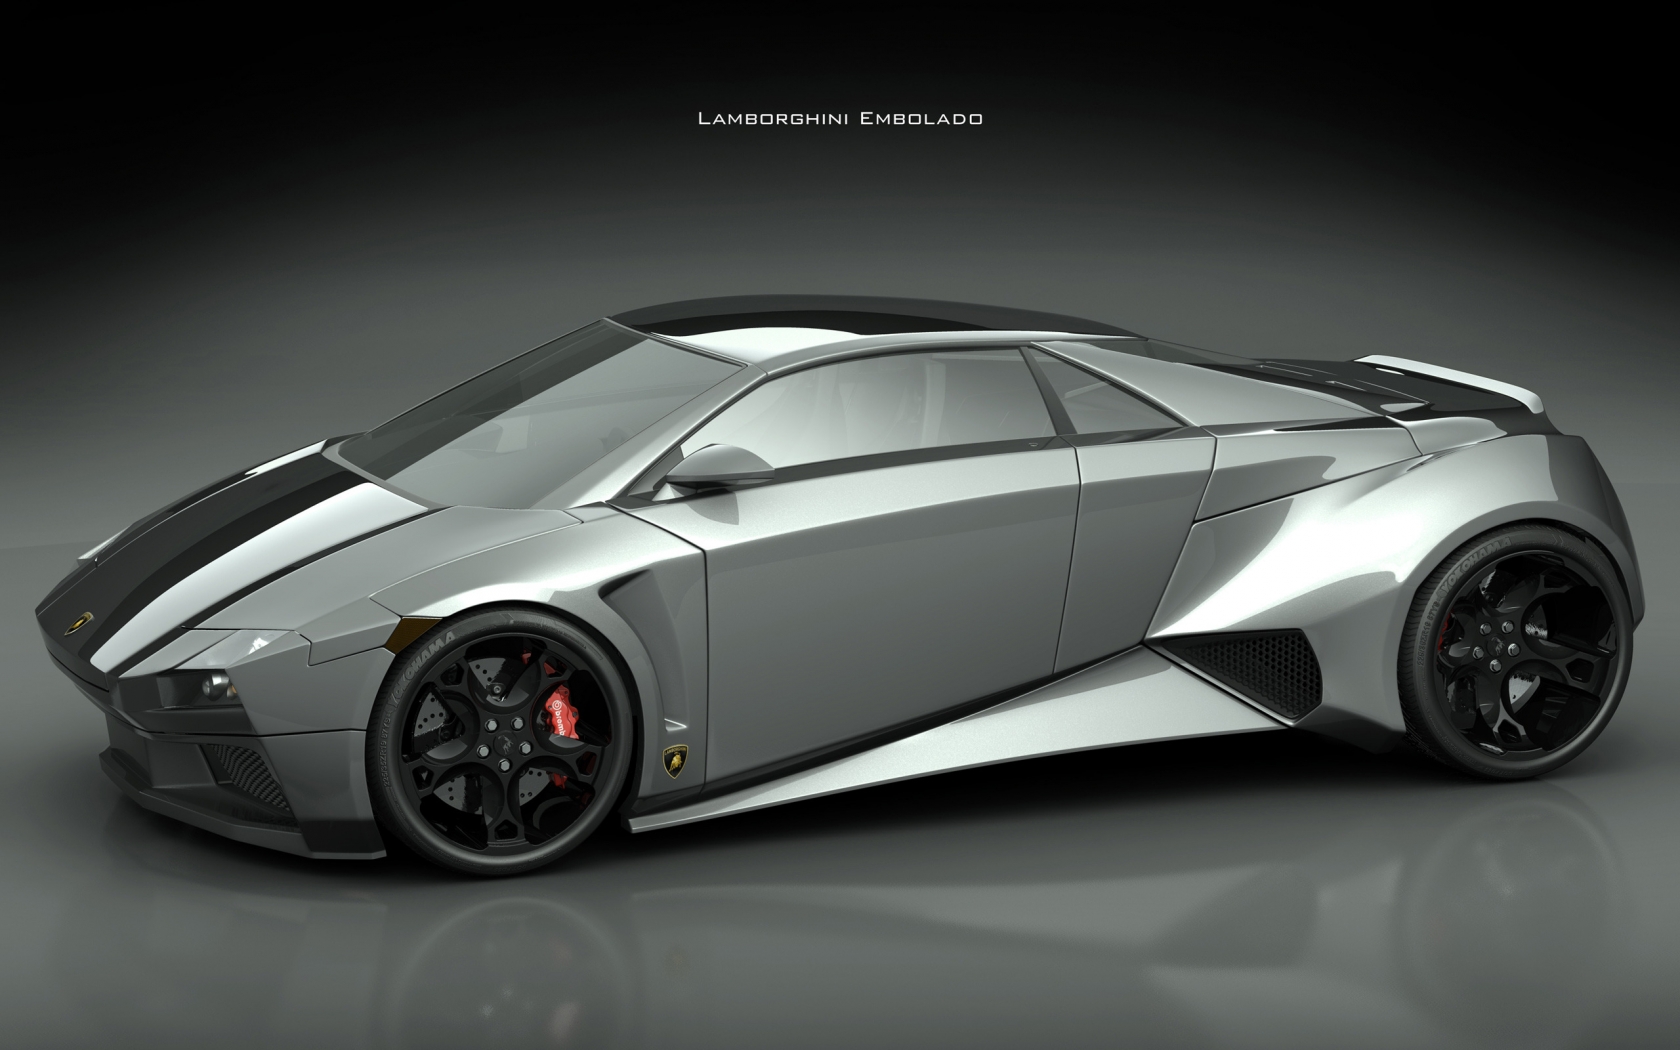 Lamborghini Embolado for 1680 x 1050 widescreen resolution